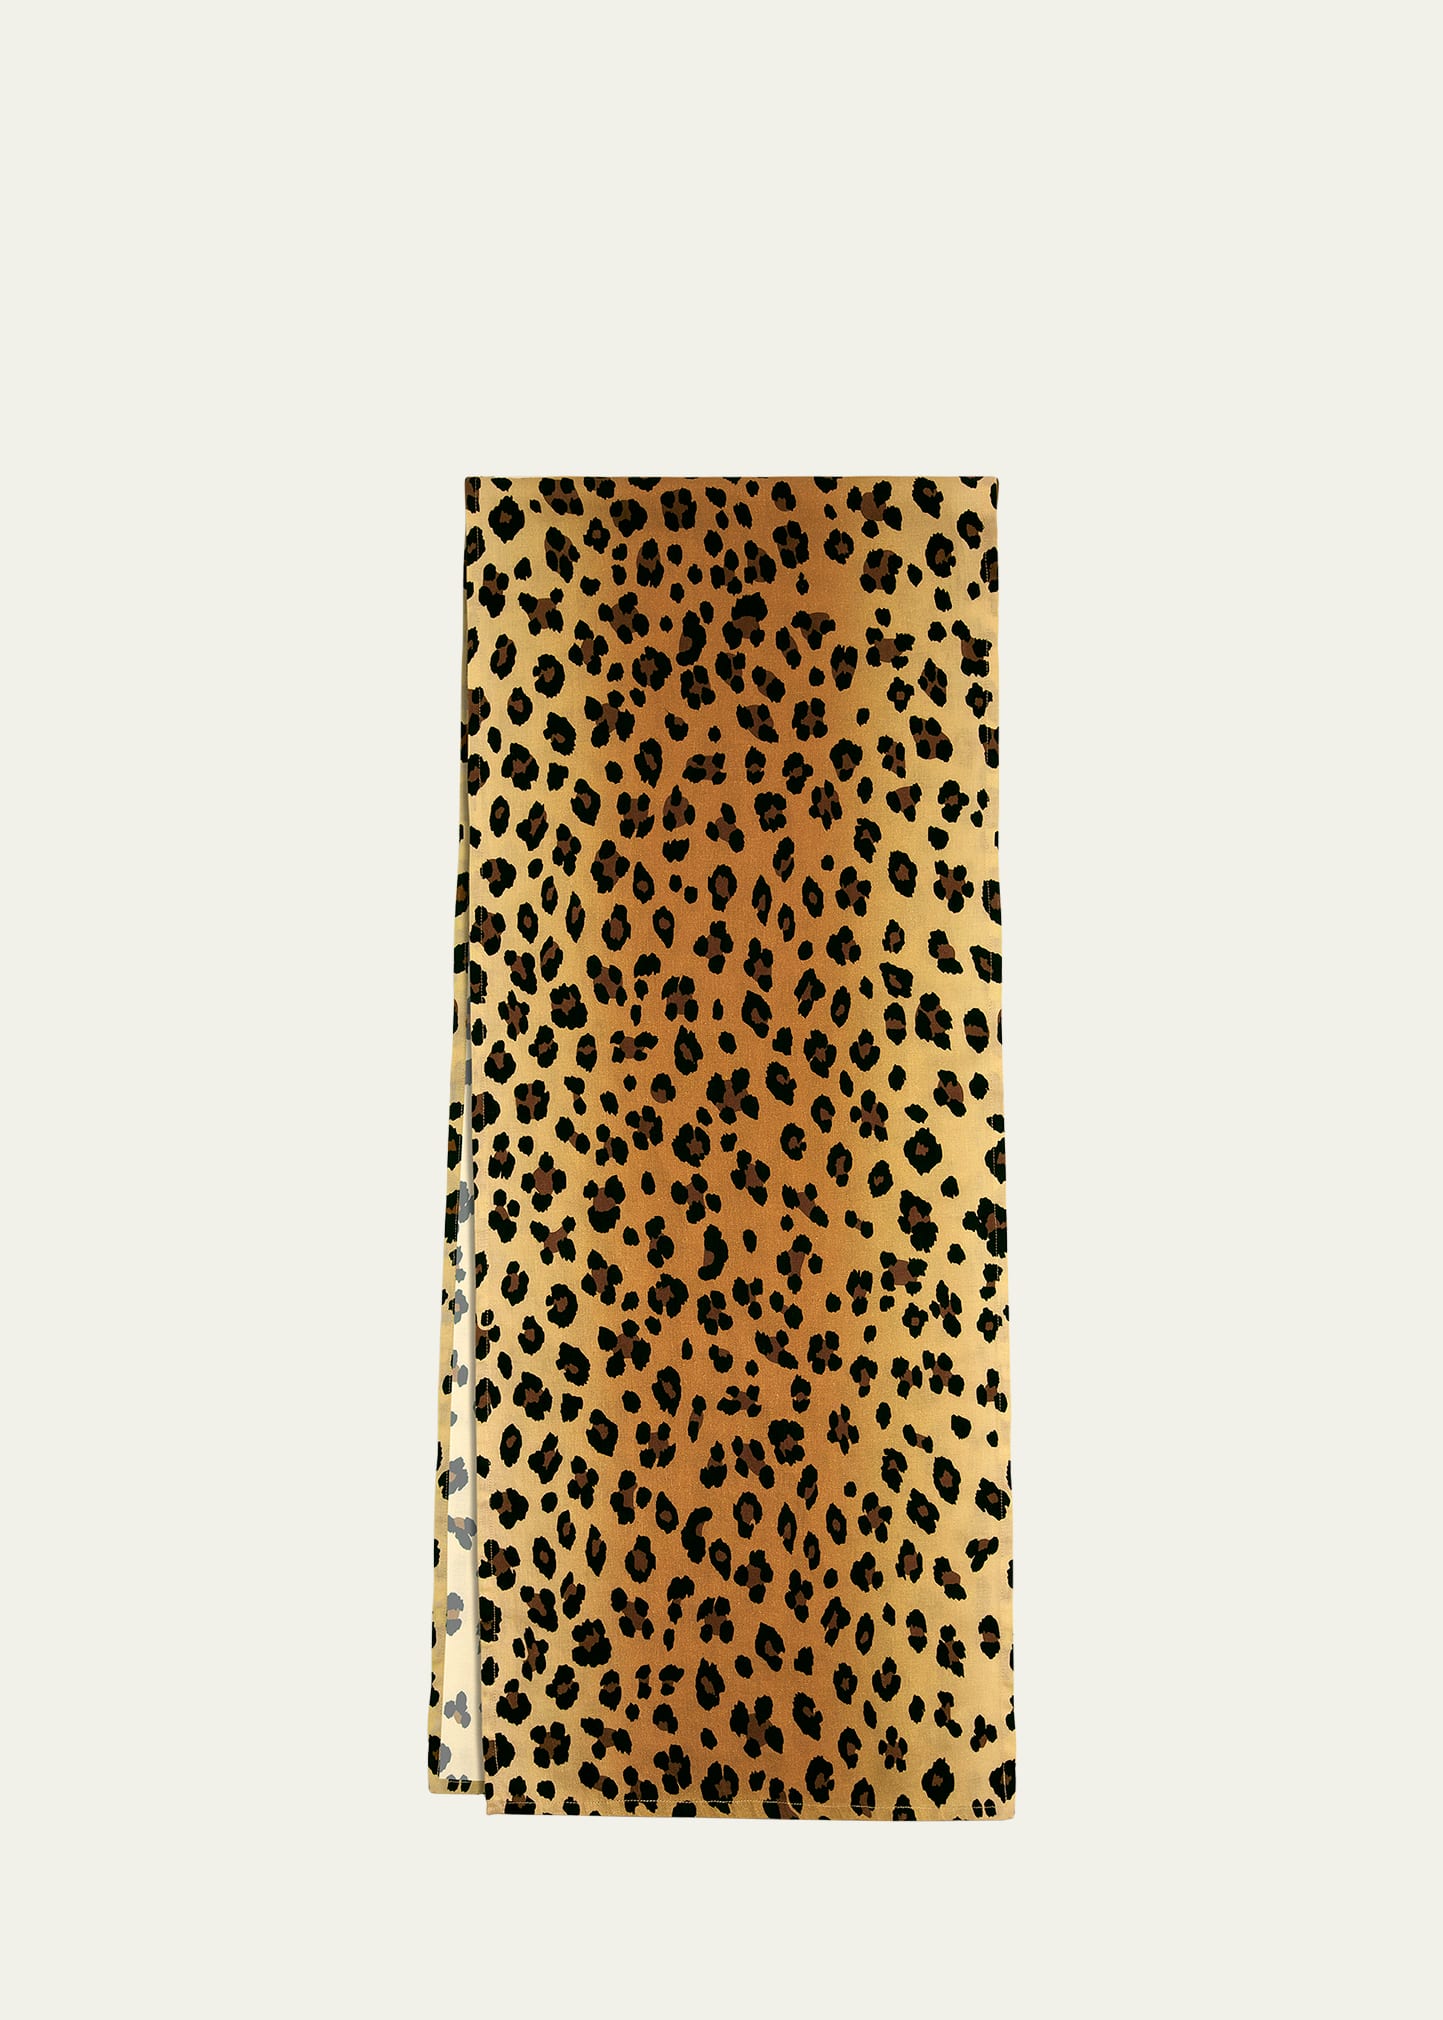 L'Objet Leopard Sateen Table Runner, 16" x 90"